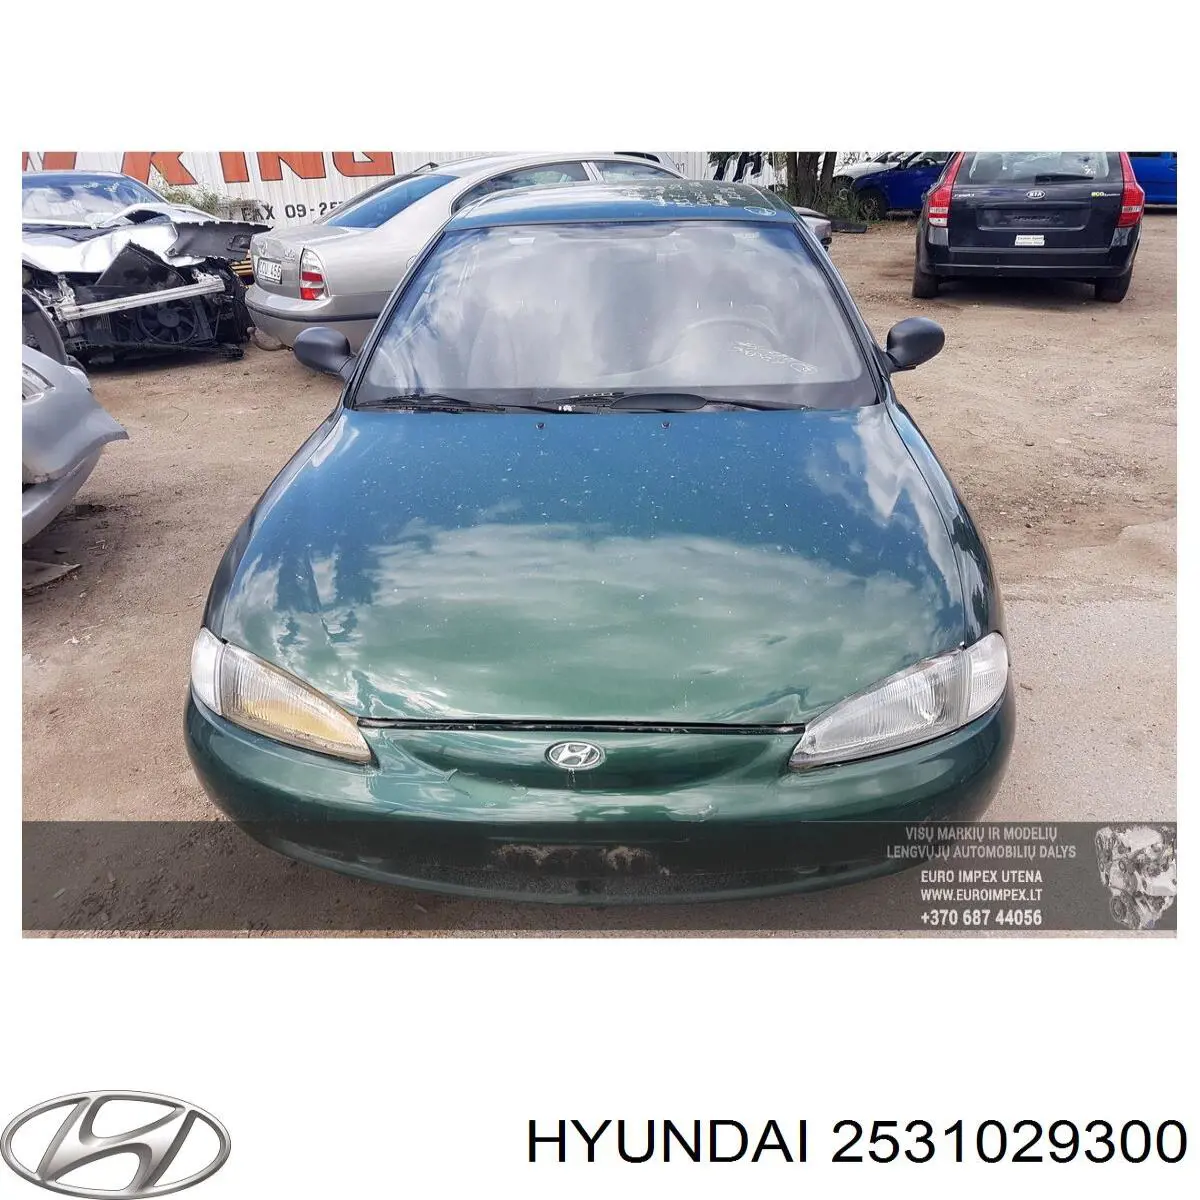 2531029300 Hyundai/Kia 